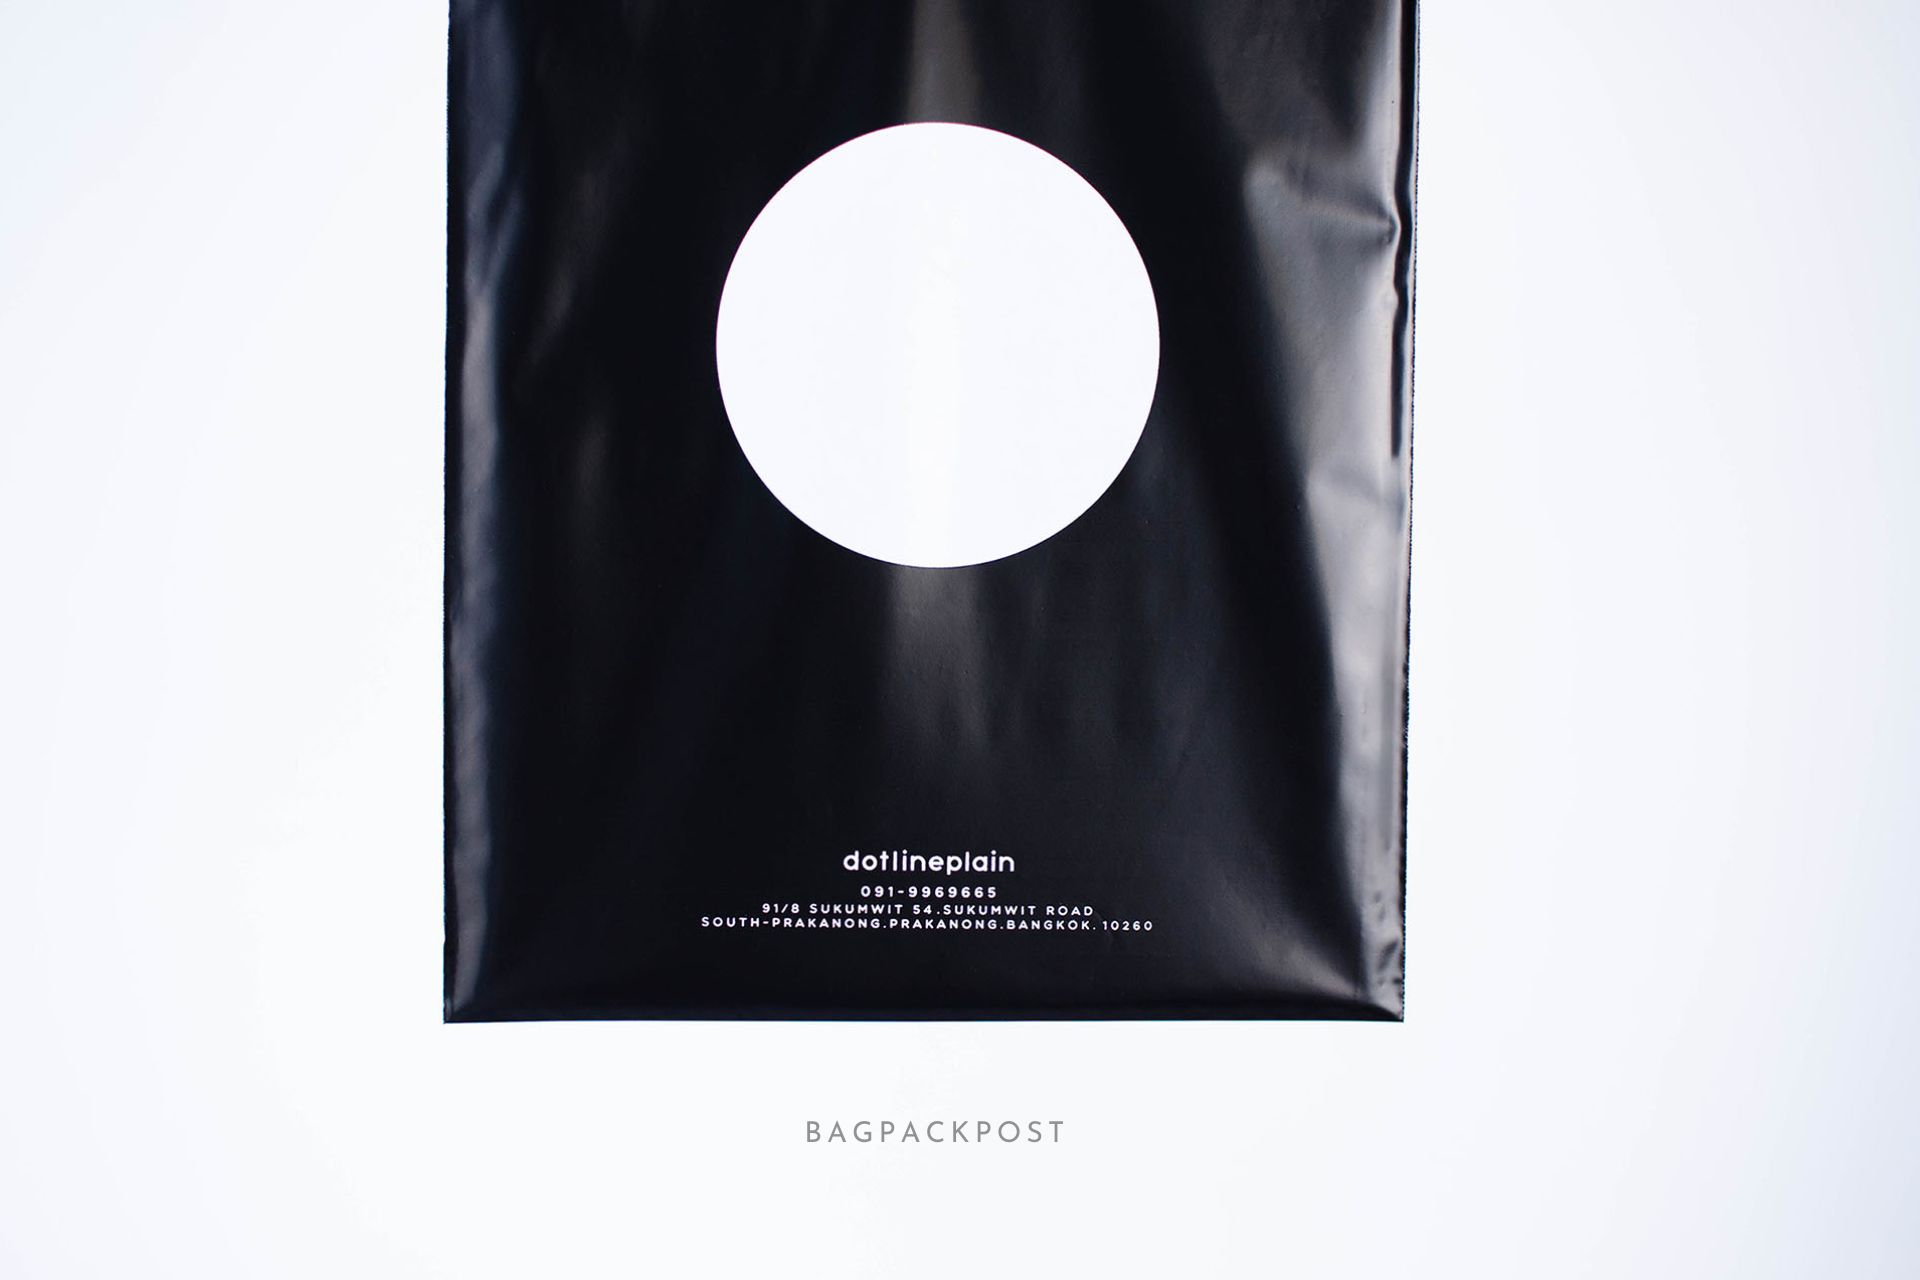 ผลิตถุงไปรษณีย์ ซองไปรษณีย์พิมพ์ลาย Dotlineplain ซองไปรษณีย์สีดำ ถุงไปรษณีย์พิมพ์ลาย 1 BagPackPost